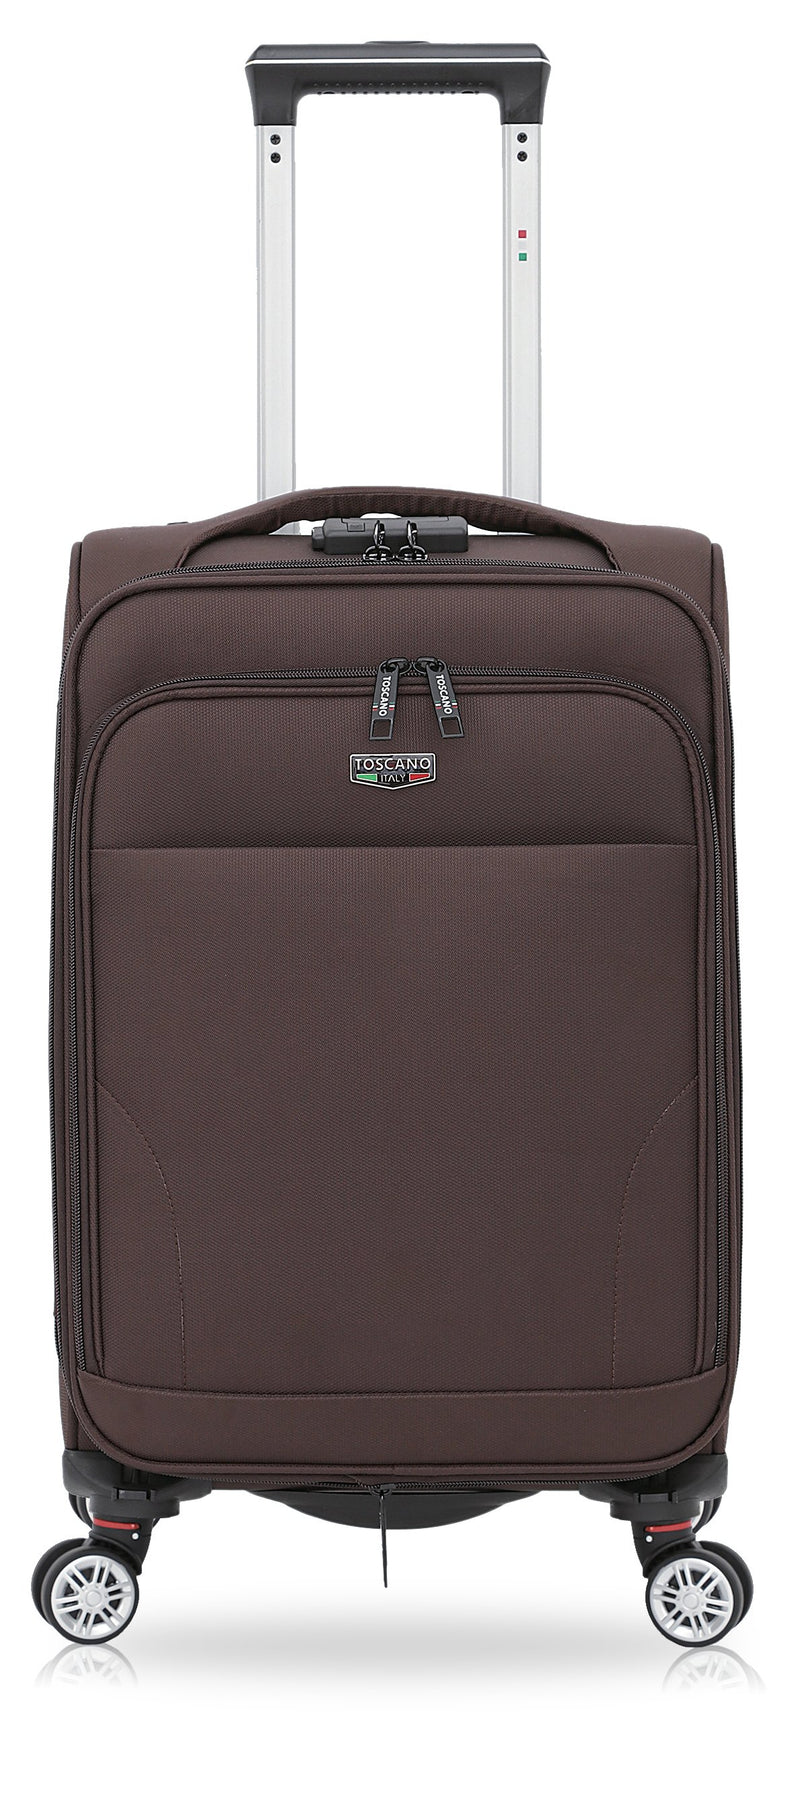 TOSCANO Ricerca 3 Pc (18", 23", 29") Luggage Travel Suitcase Set